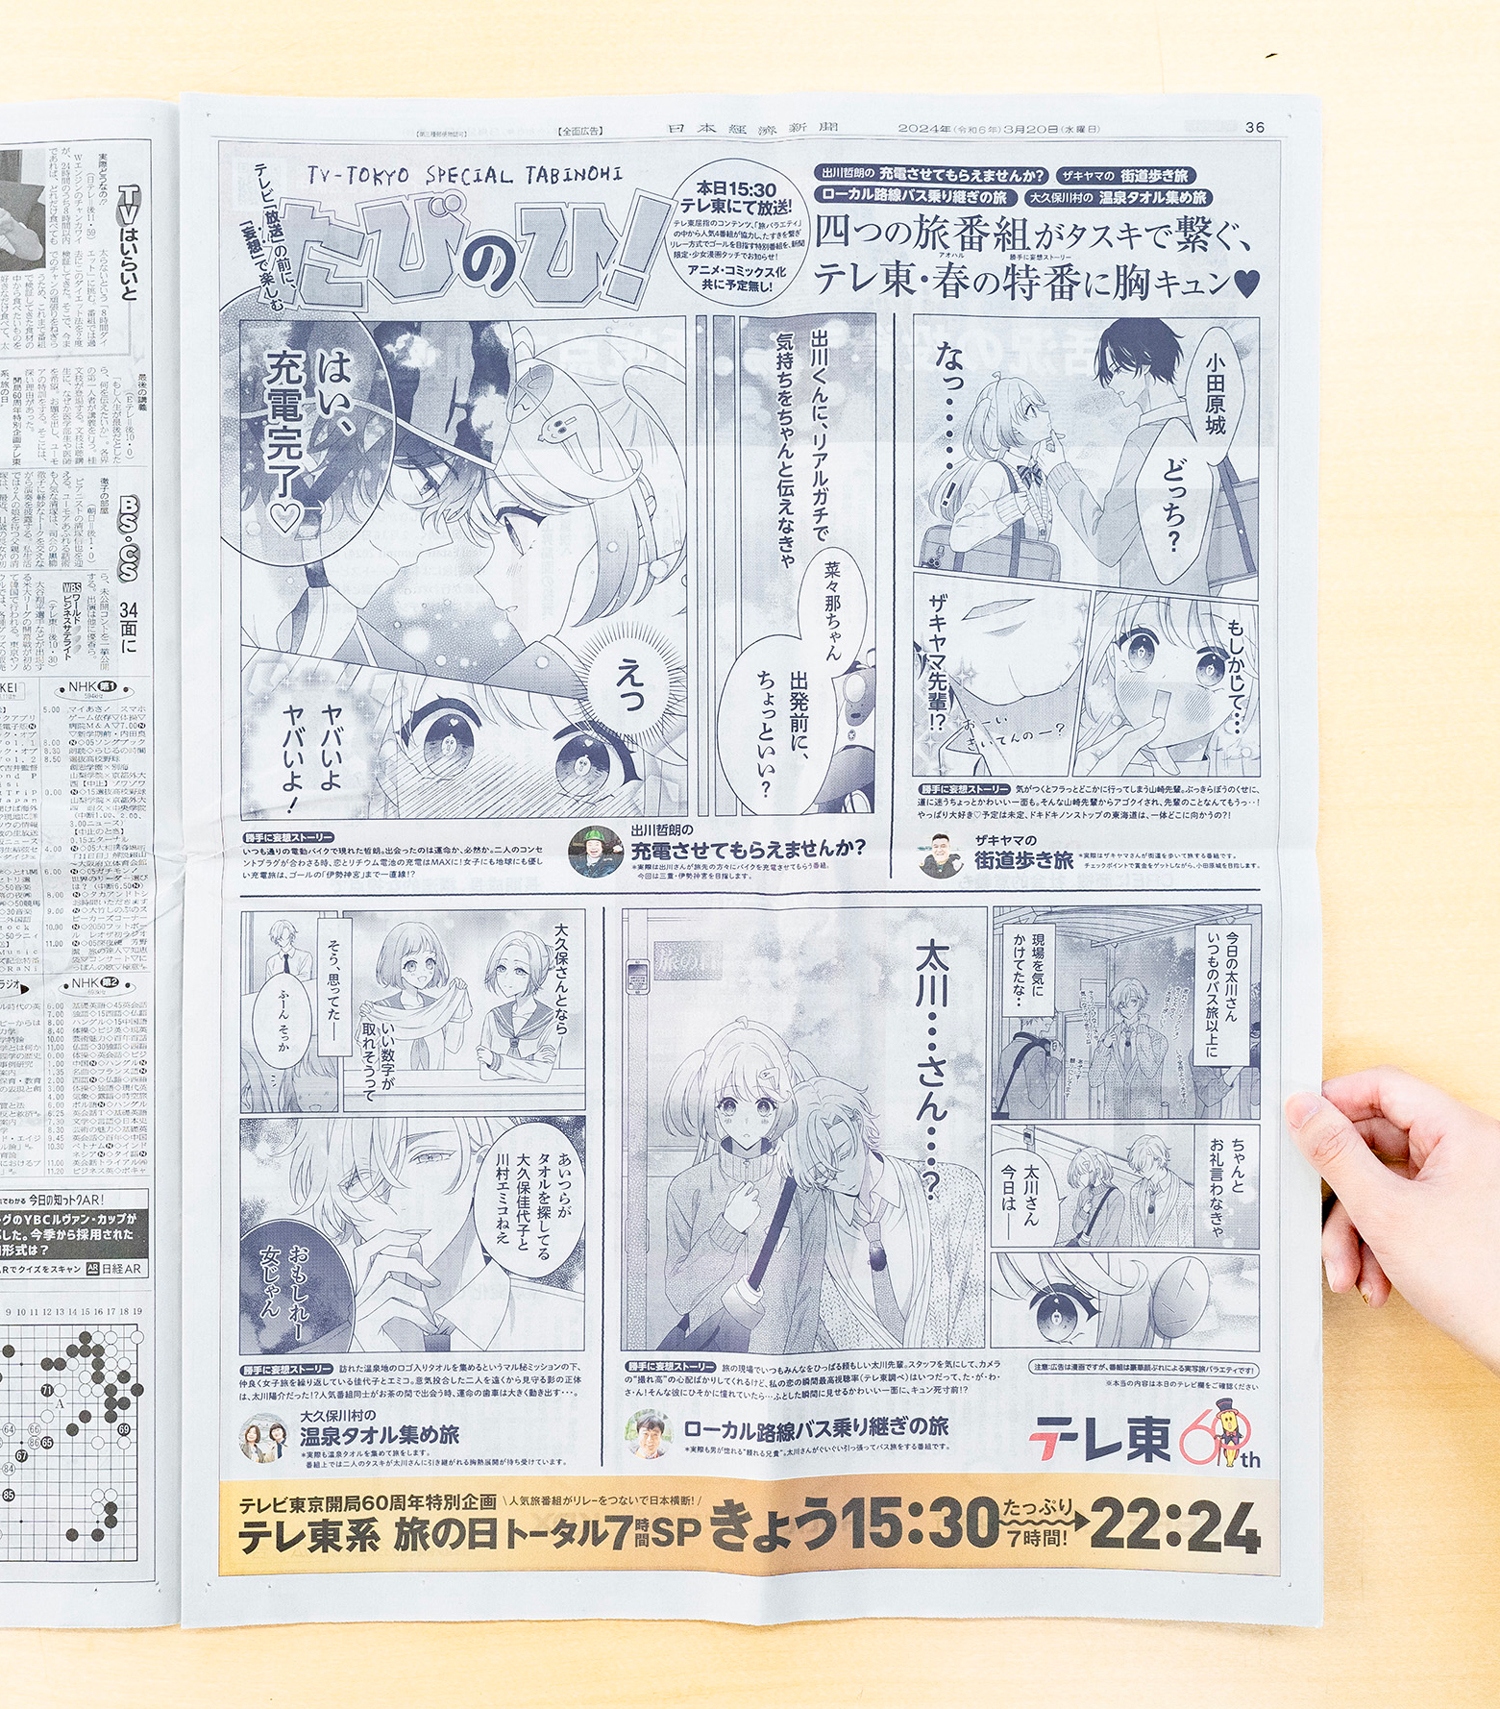 テレ東 旅の日 番組告知デザイン 日経新聞15段広告